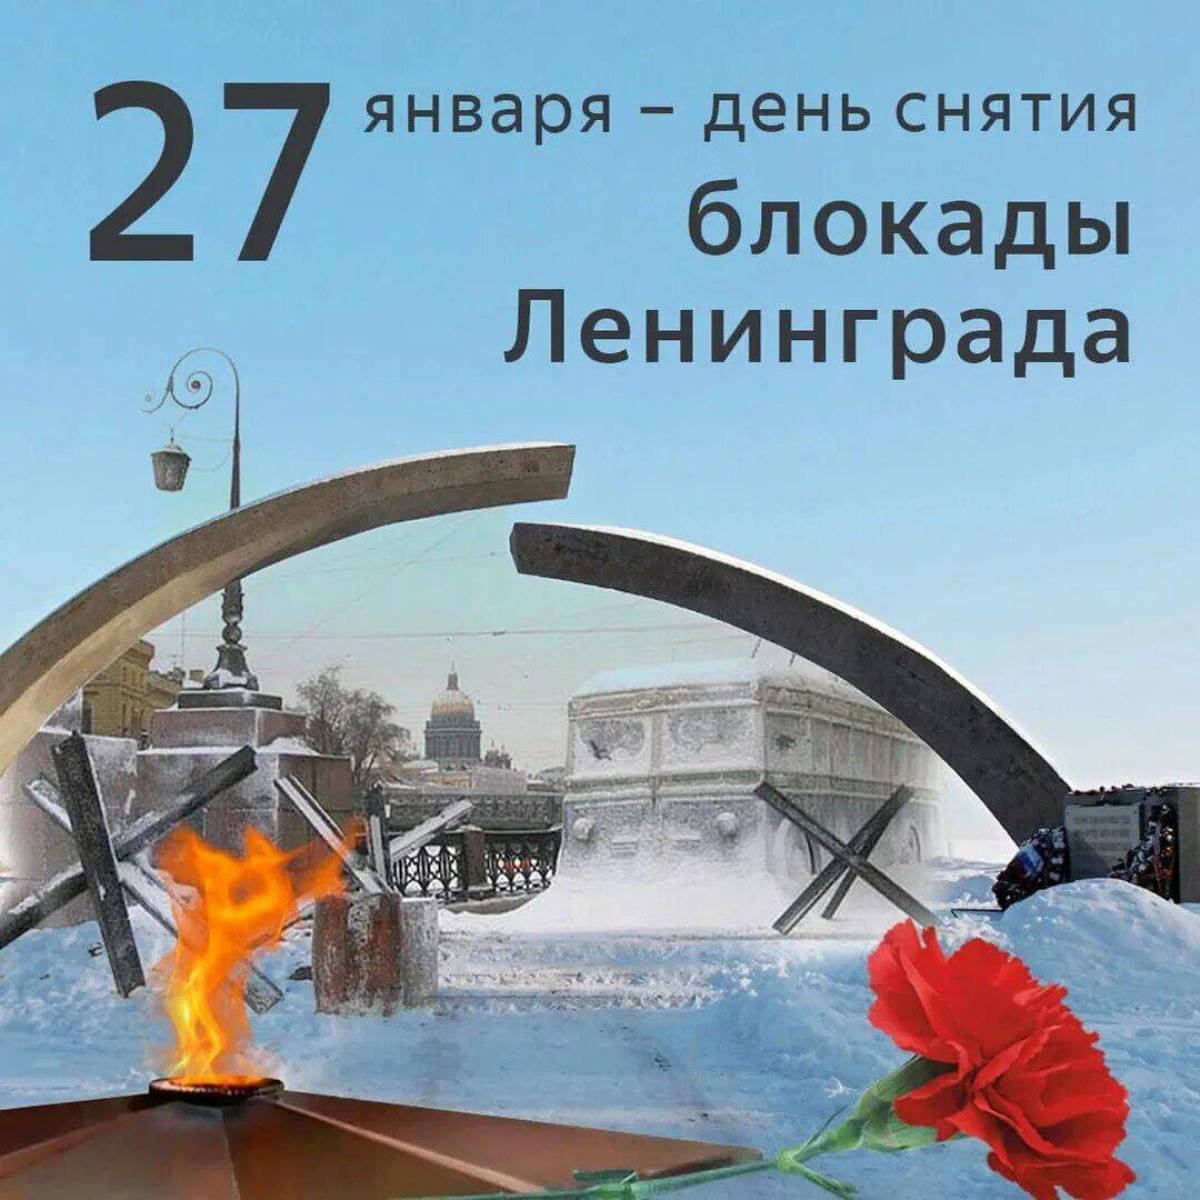 День снятия блокады ленинграда #35